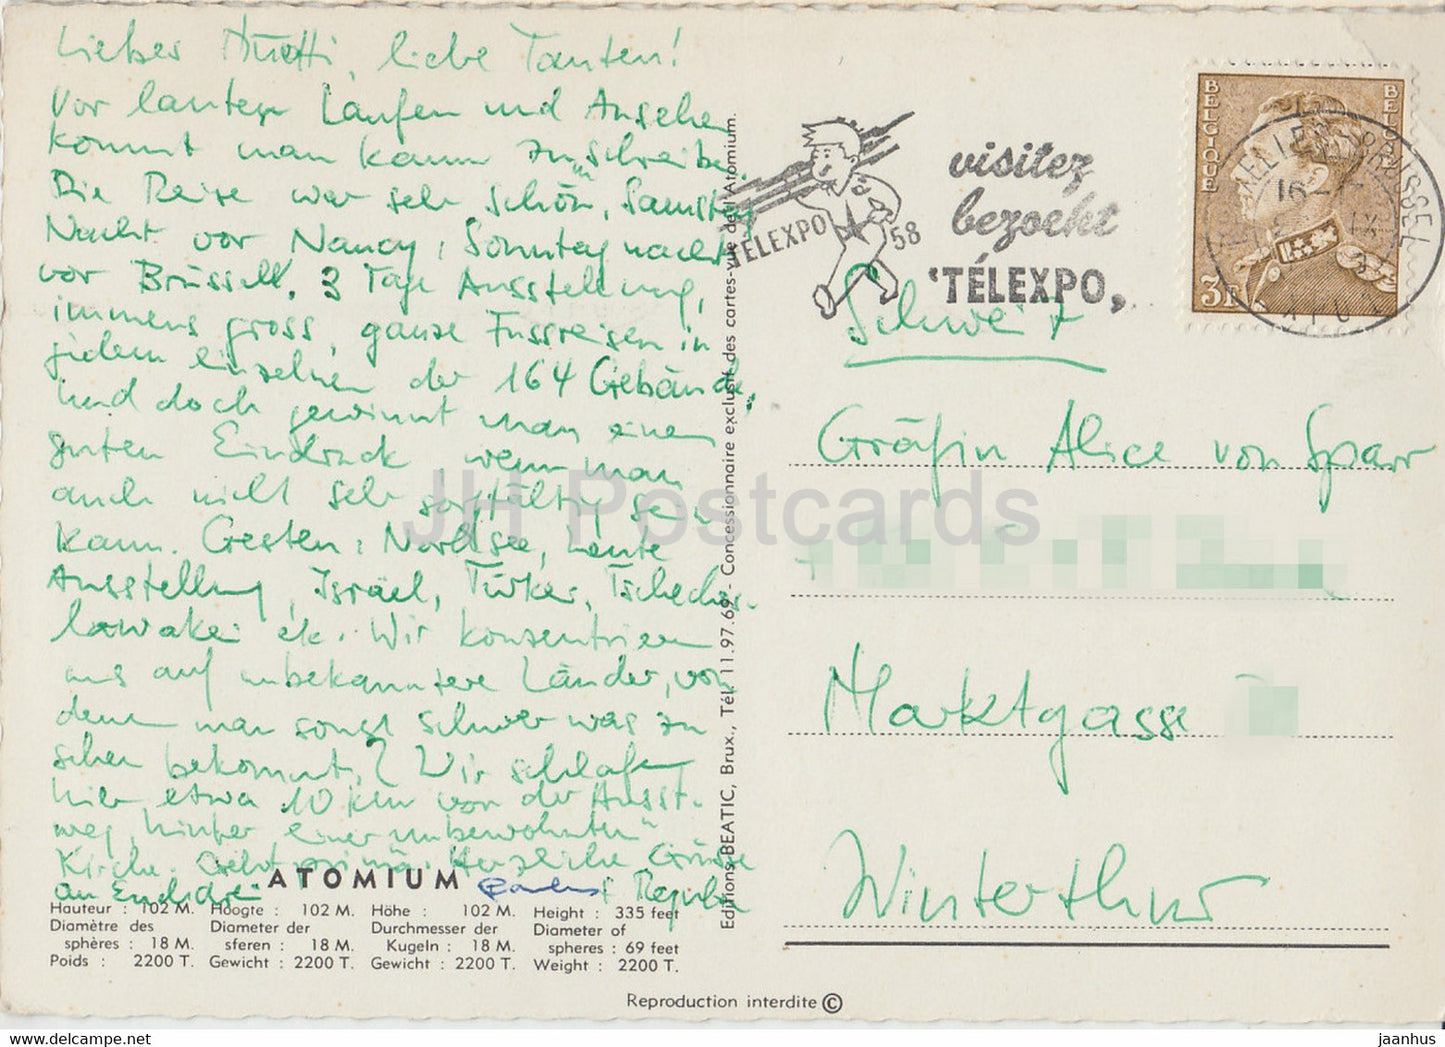 Atomium - EXPO 58 - old postcard - Belgium - used